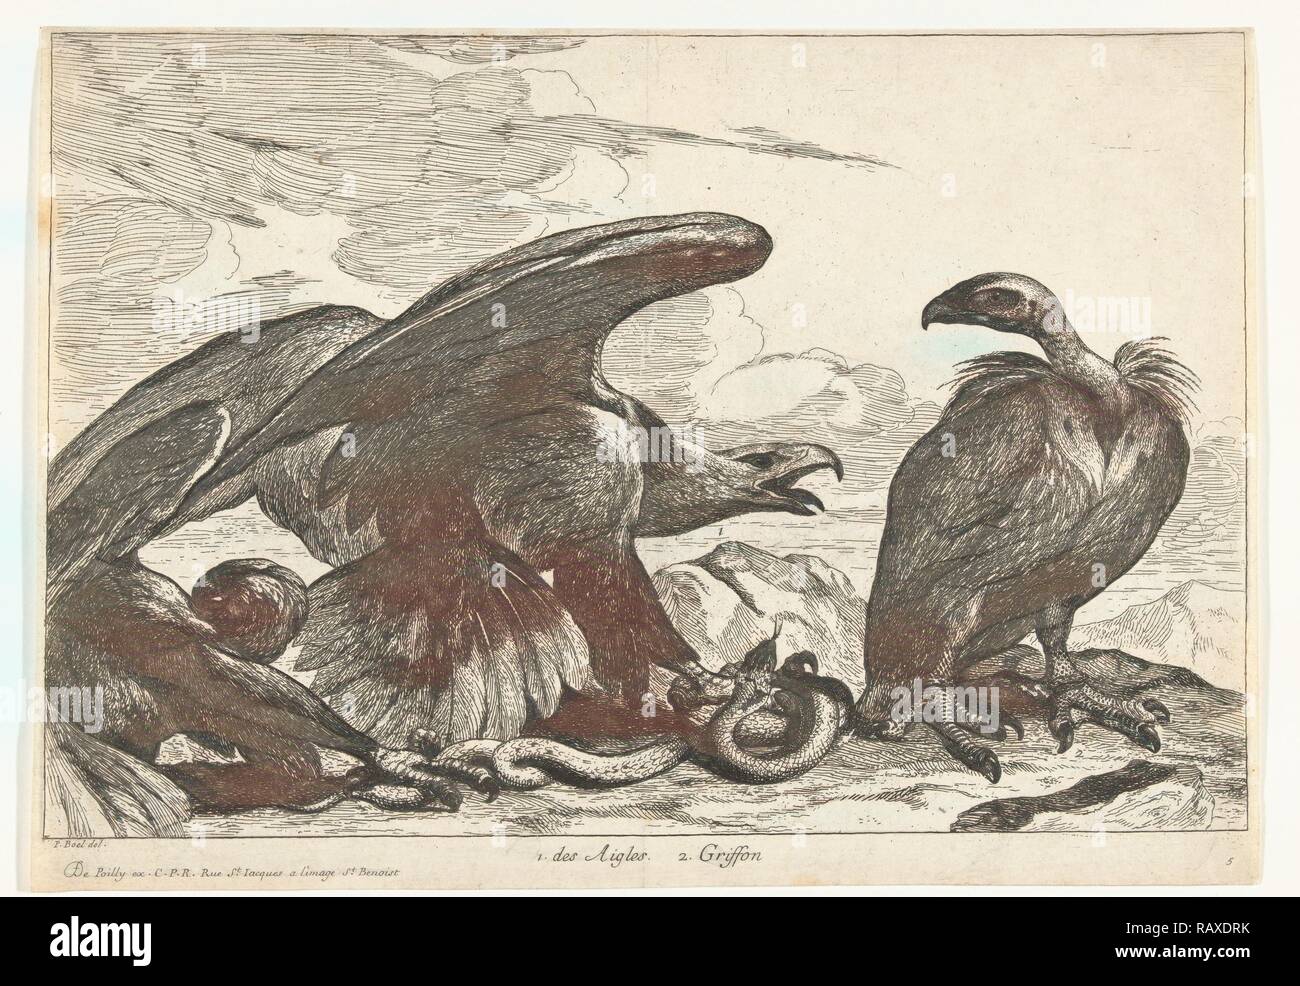 Vautour et un aigle avec snake, imprimer bouilloire : Peeter Boel attribué à, Peeter Boel, De Poilly, 1670 - 1674 repensé Banque D'Images